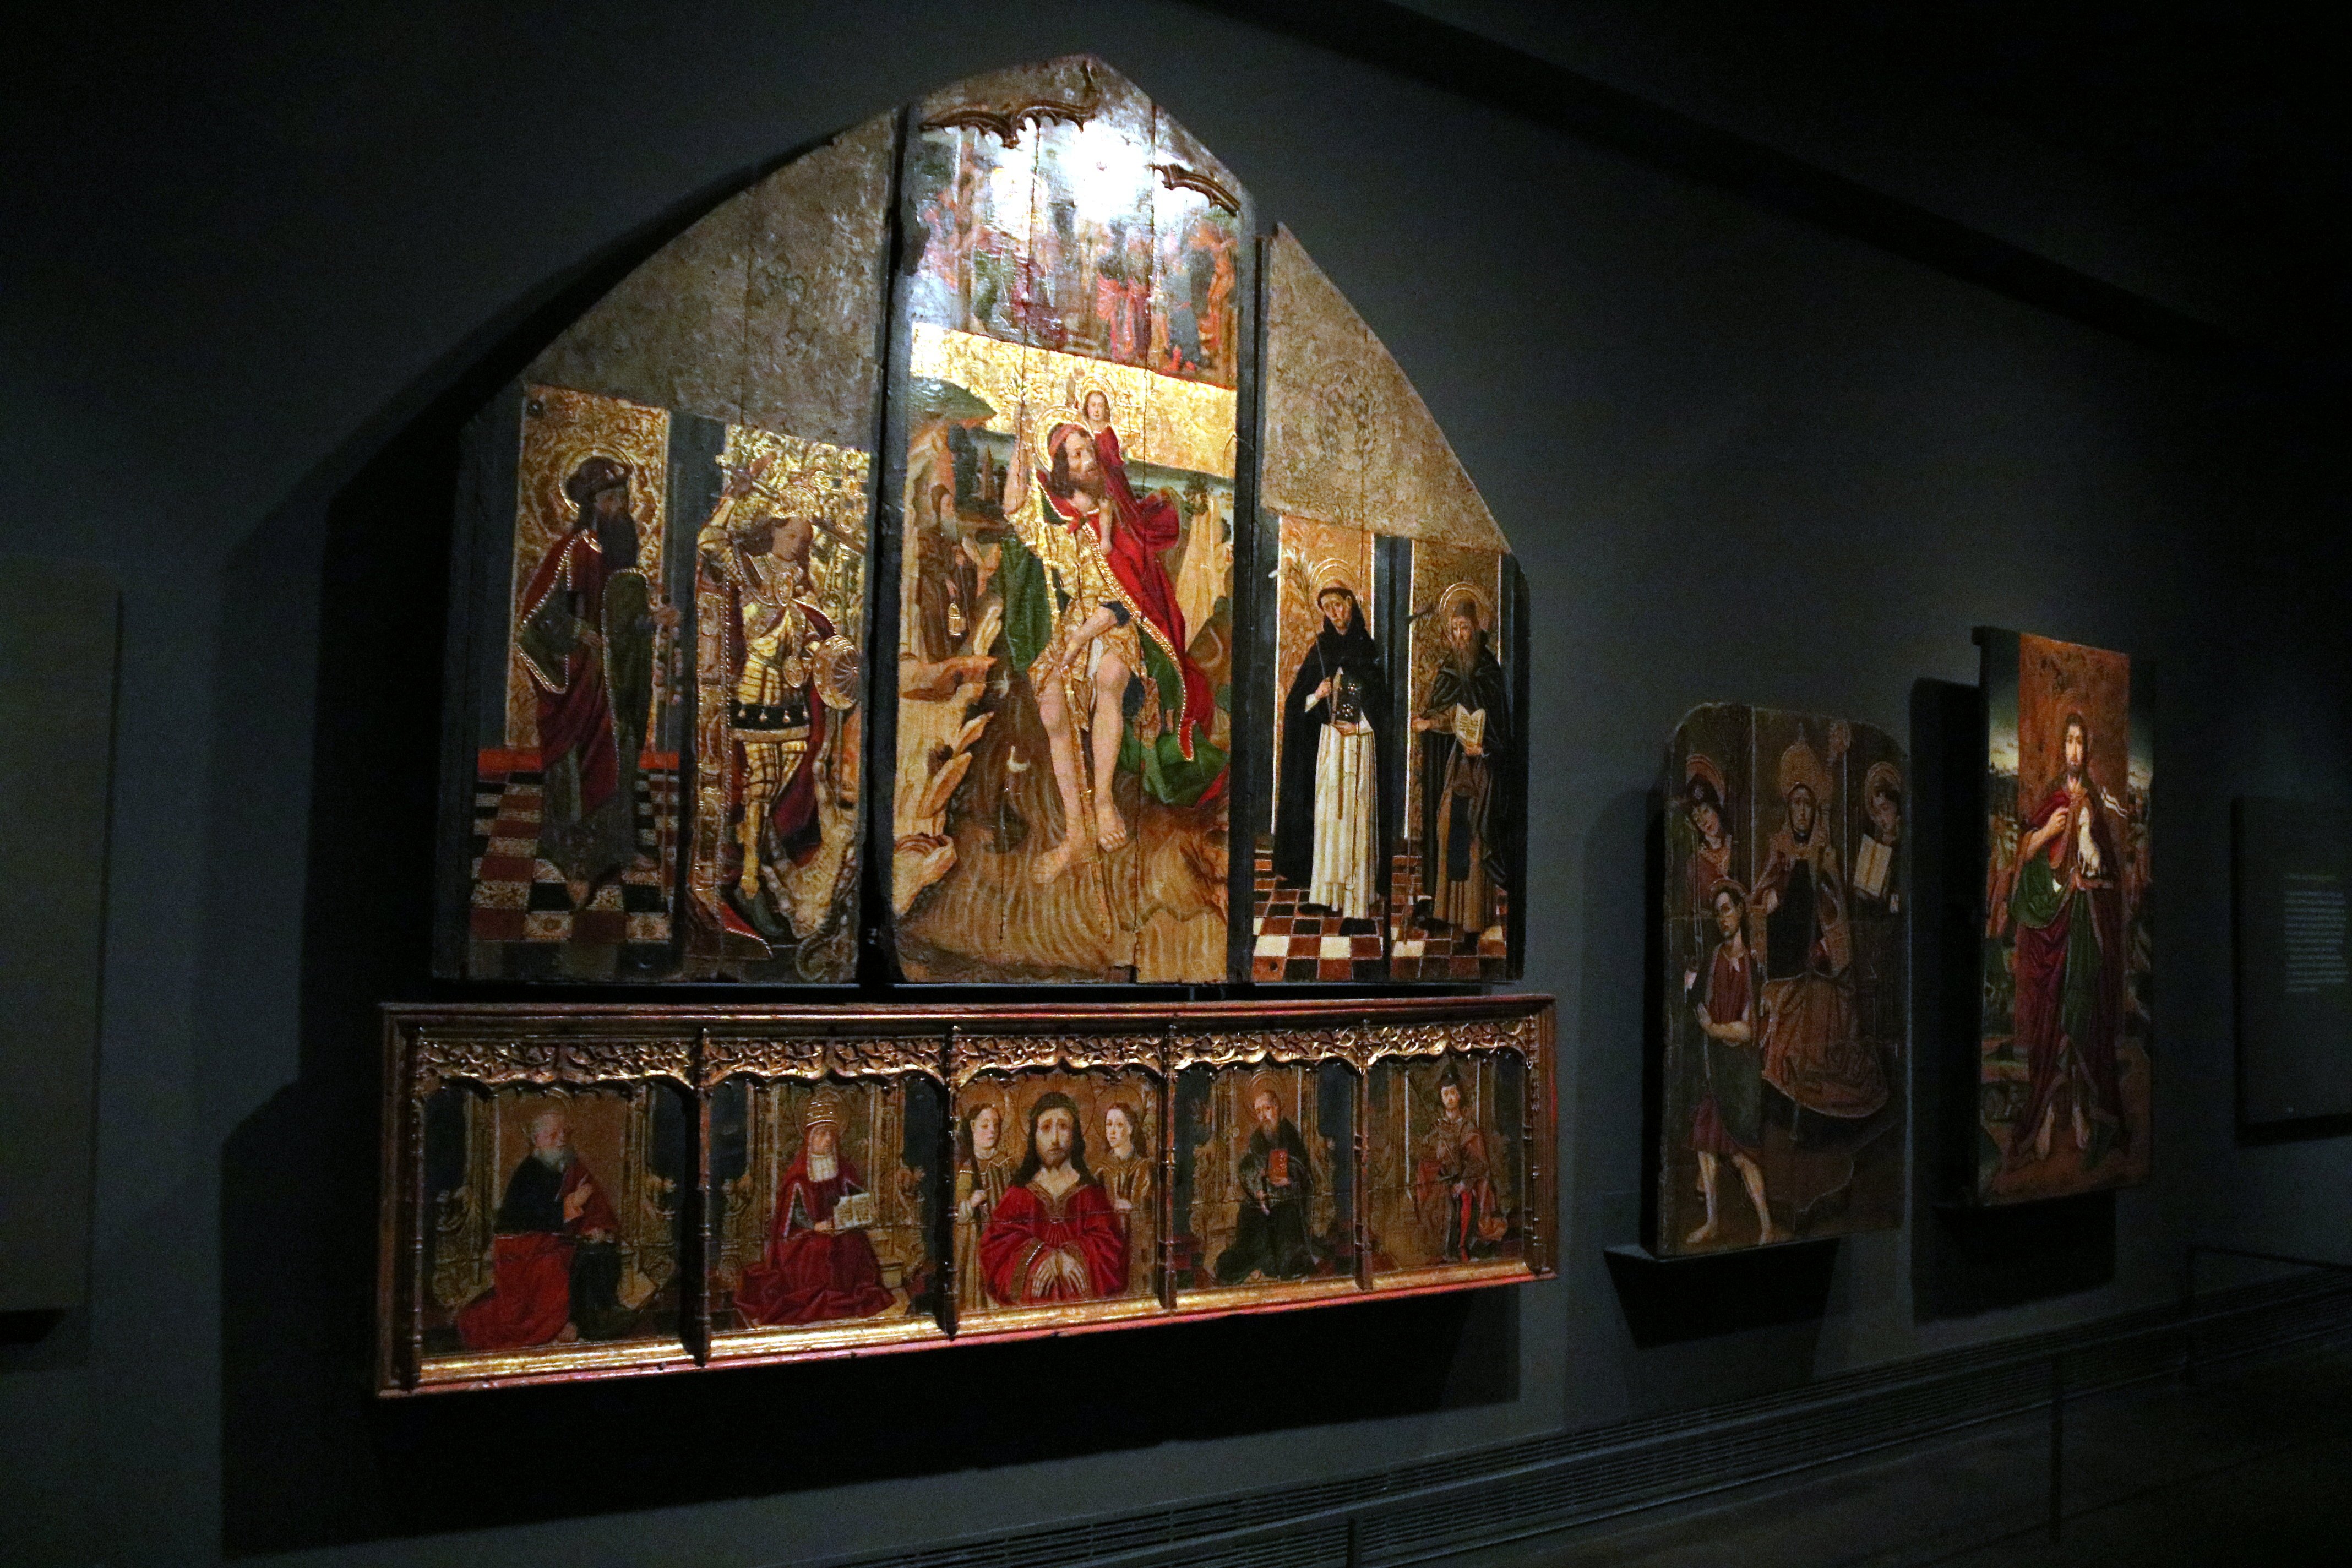 Aquest dilluns, data límit per enviar a l’Aragó 111 obres del Museu de Lleida